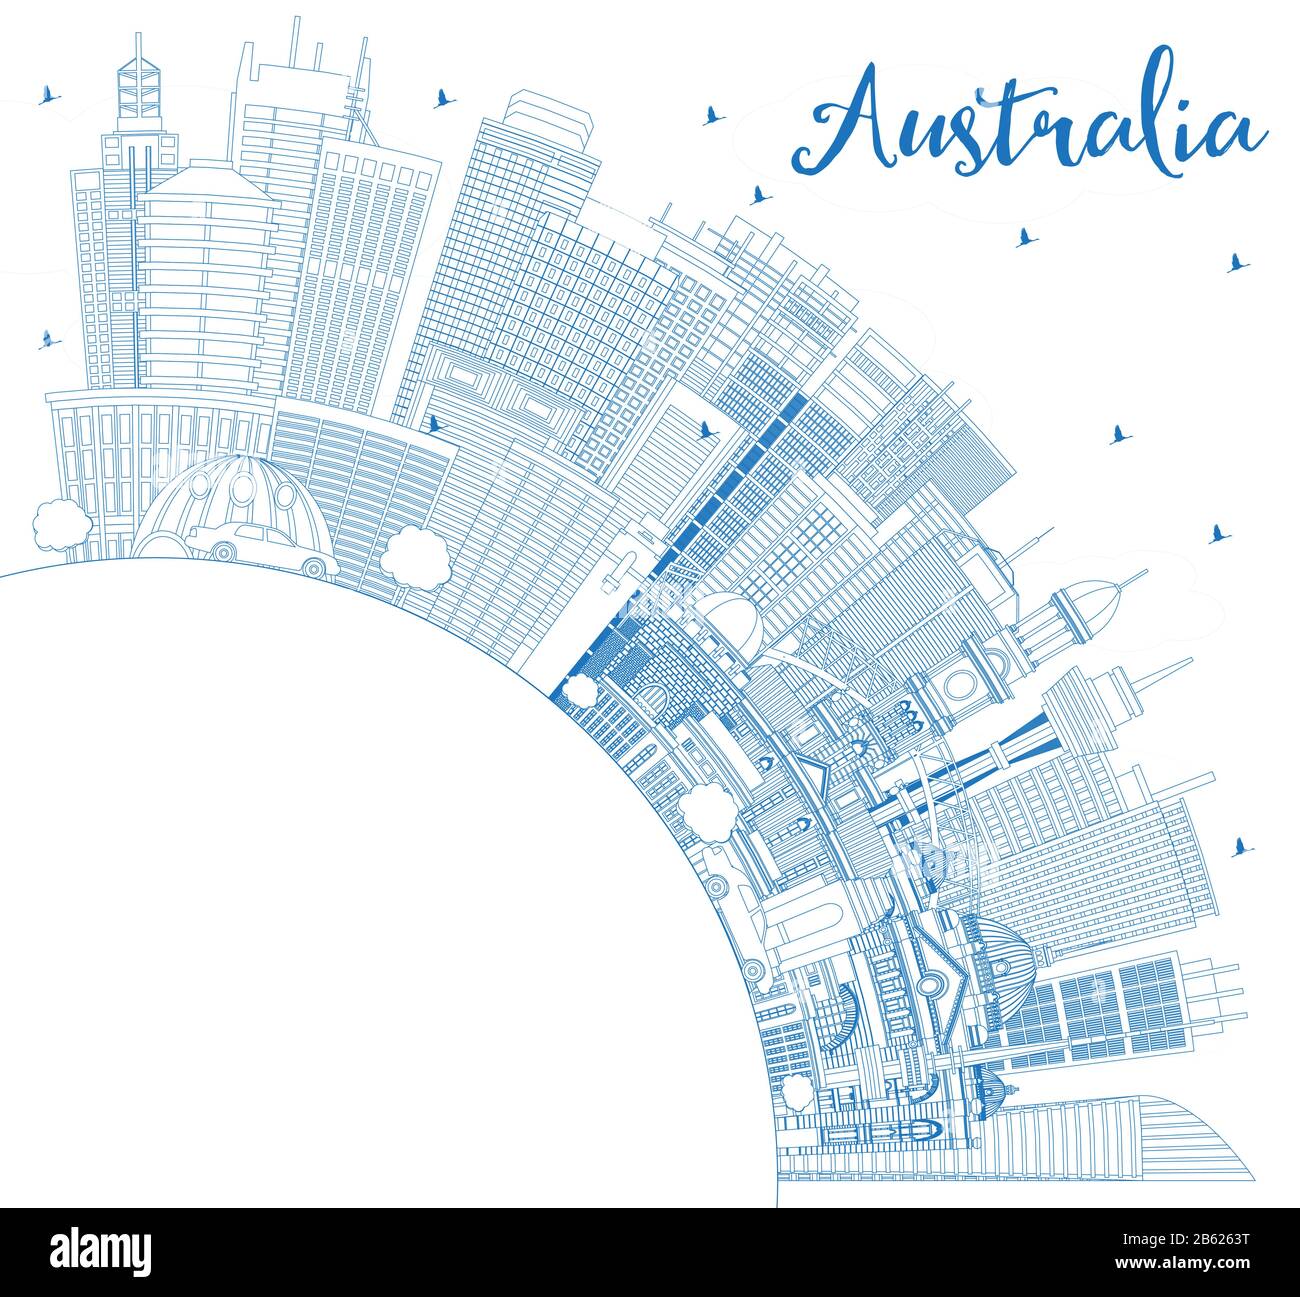 Profilo Australia City Skyline Con Edifici Blu E Copy Space. Illustrazione Vettoriale. Concetto Di Turismo Con Architettura Storica. Australia. Illustrazione Vettoriale